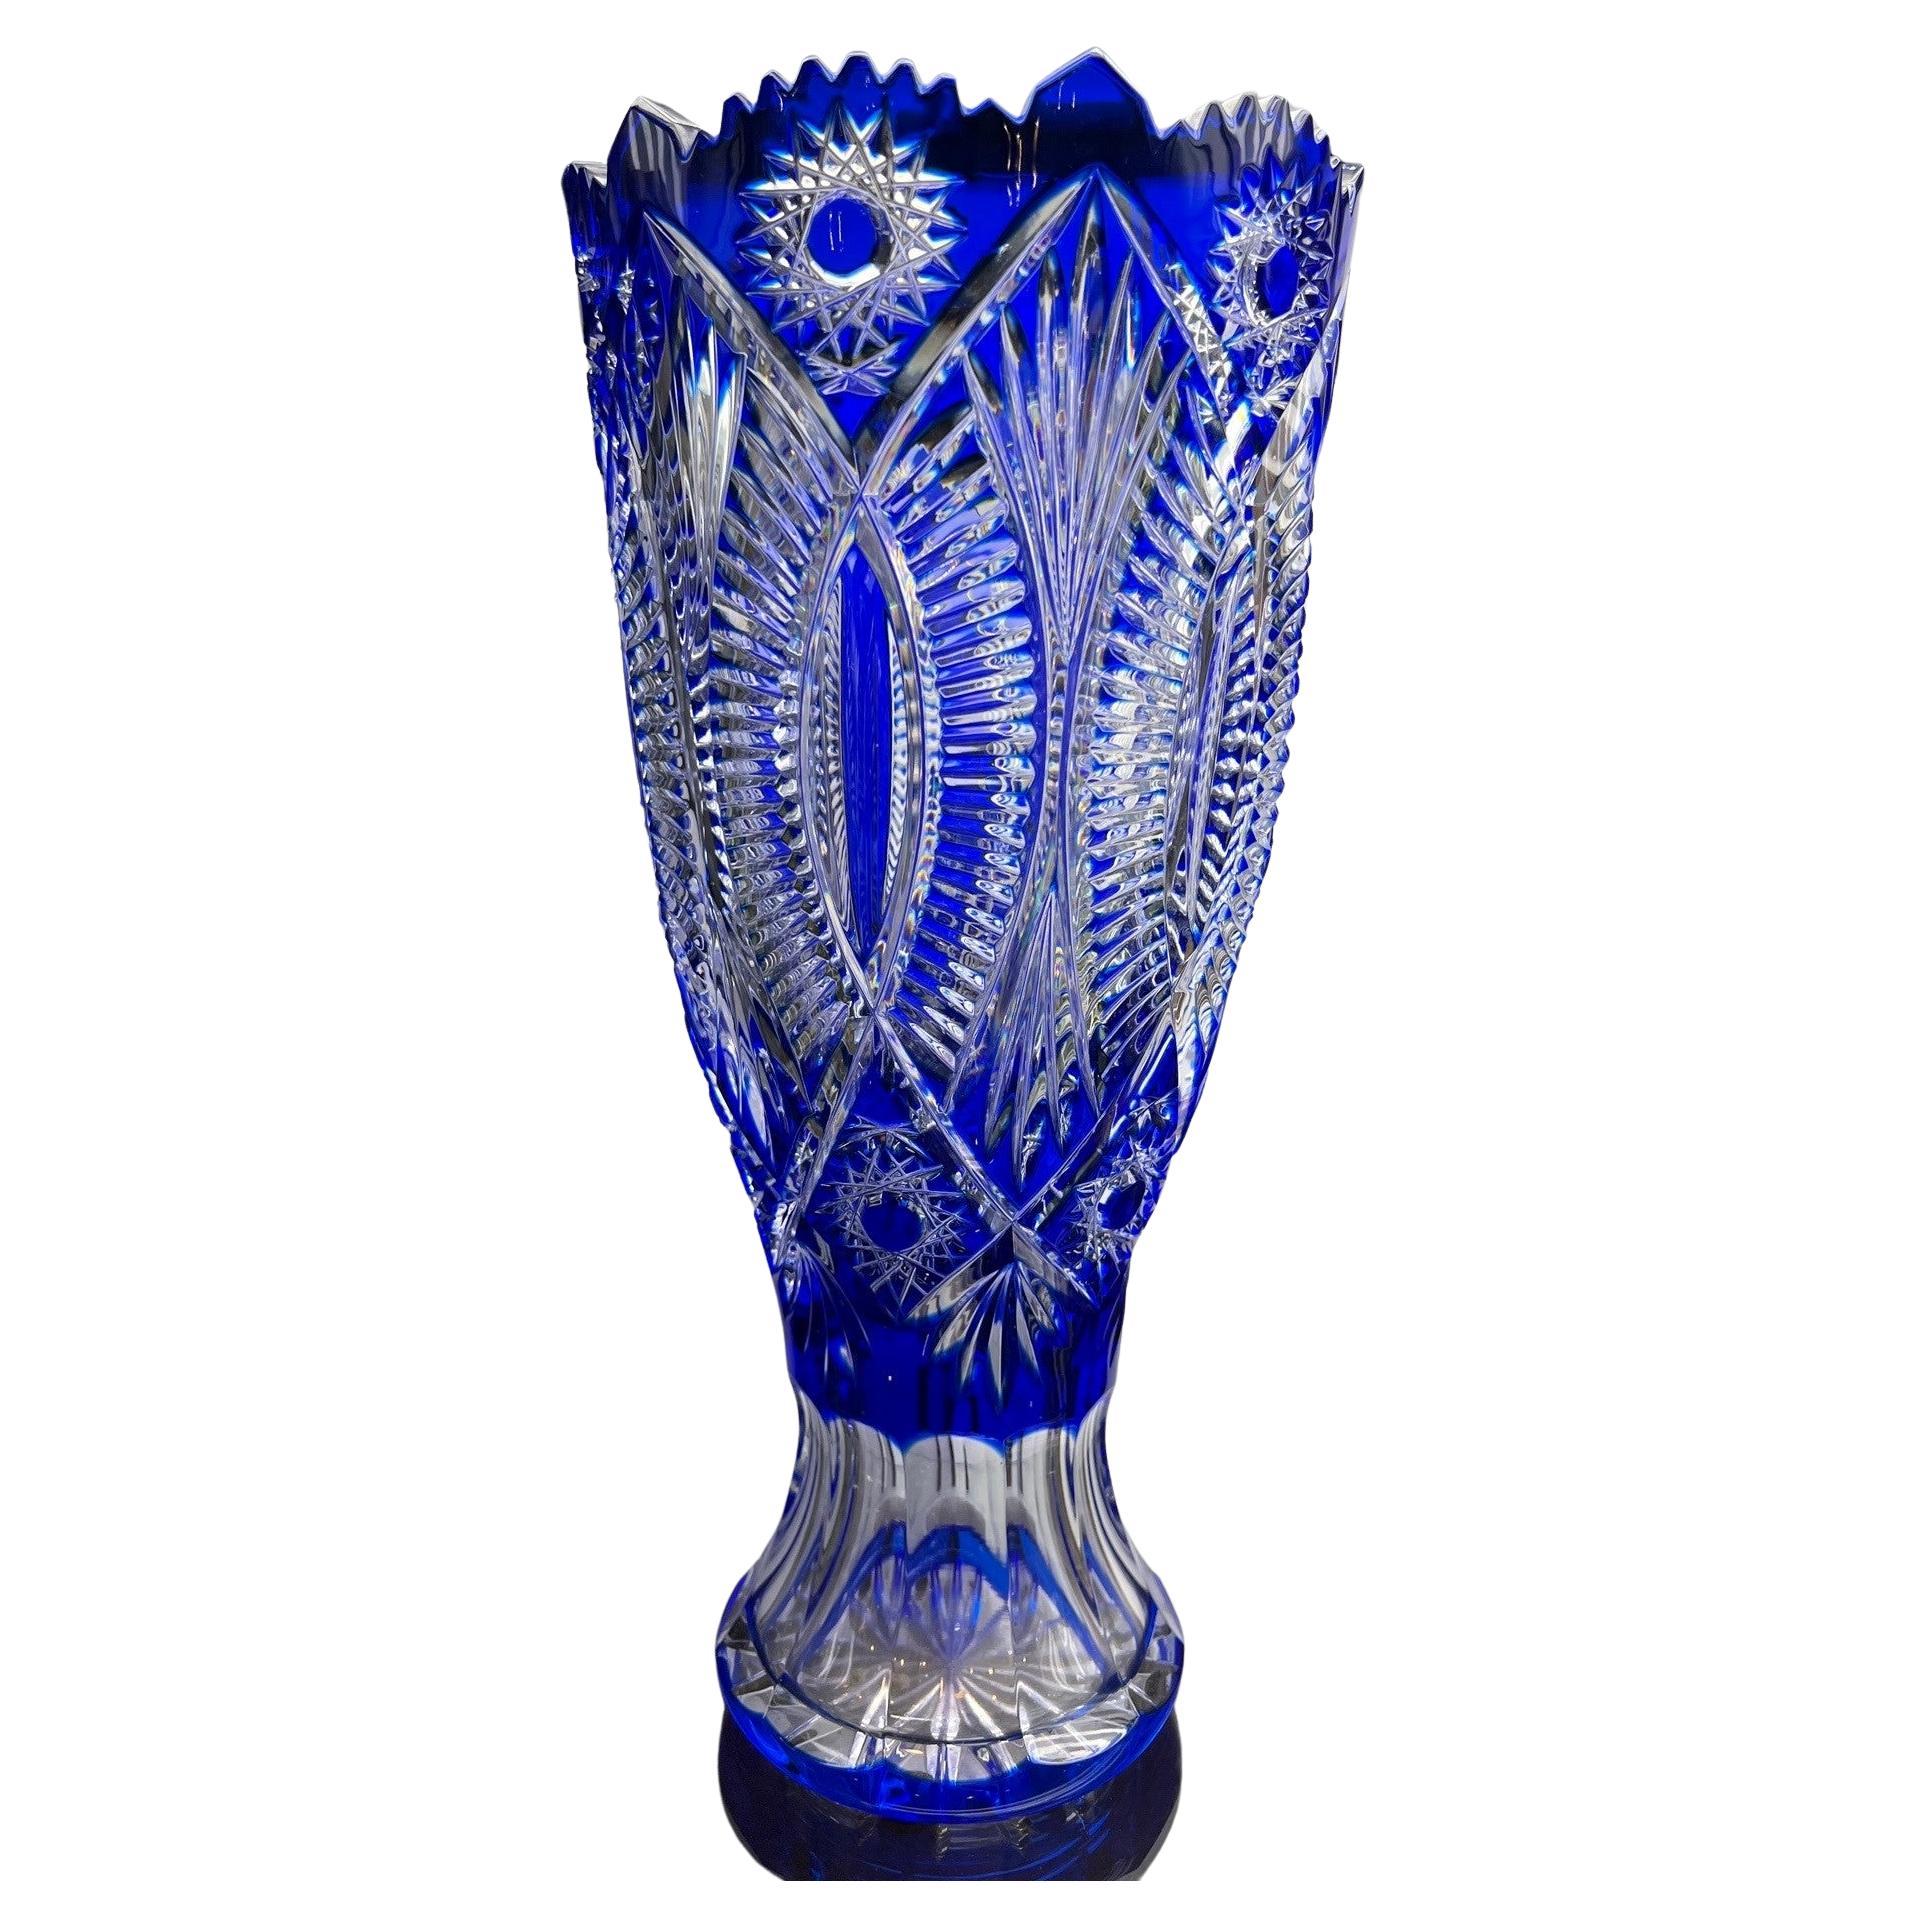  Vase en cristal de plomb bleu cobalt taillé à la main par Caesar Crystal Bohemiae Co. Tchèque.  